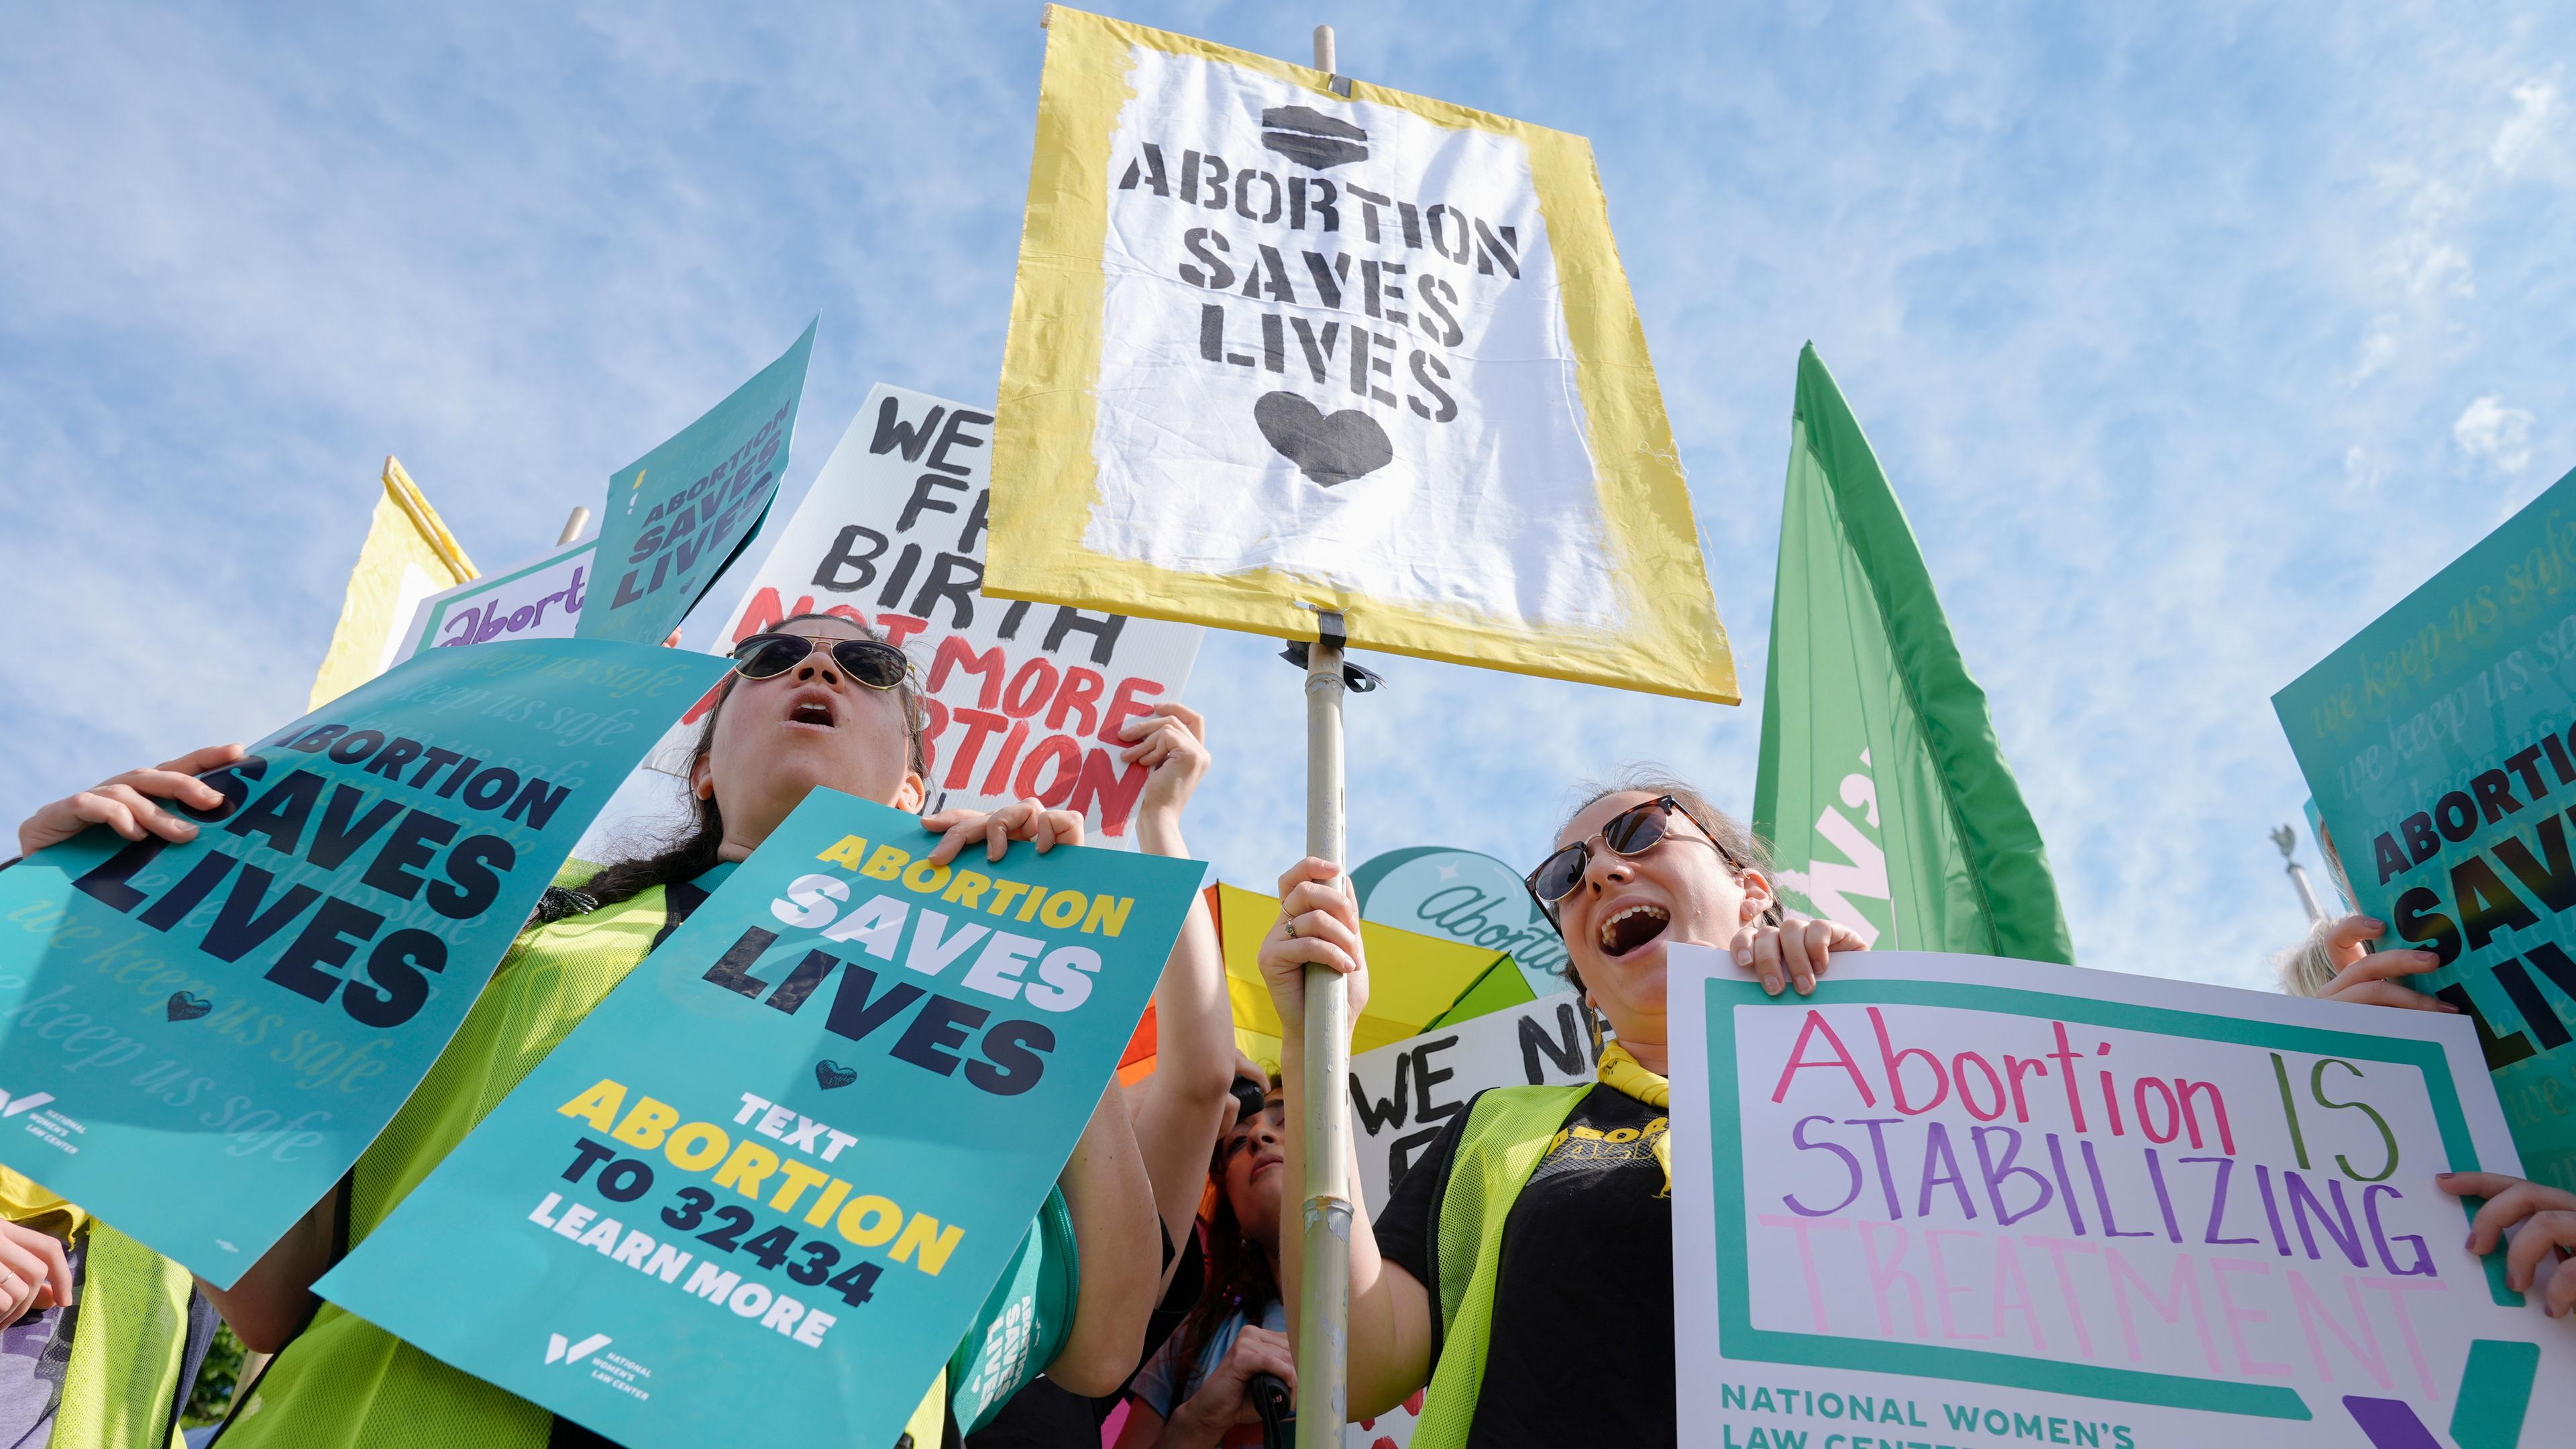 Aktivisten protestieren halten bunte Schilder mit der Aufschrift "ABORTION SAVES LIVES" und weiteren Forderungen für das Recht auf Abtreibung in den USA hoch